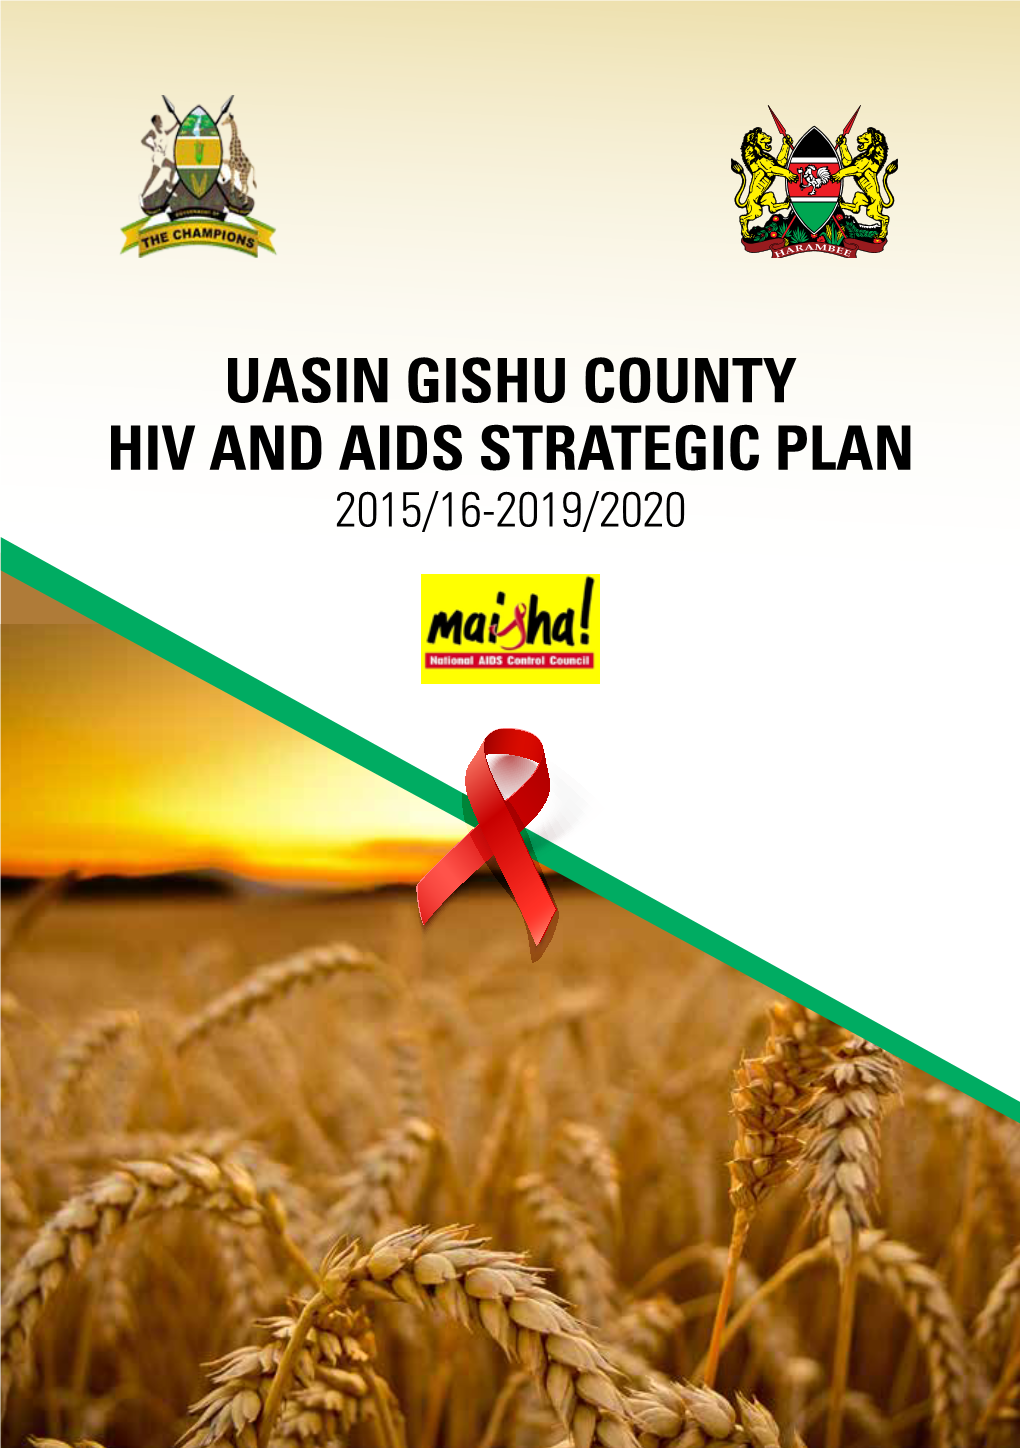 Uasin Gishu County Hiv and Aids Strategic Plan 2015/16-2019/2020